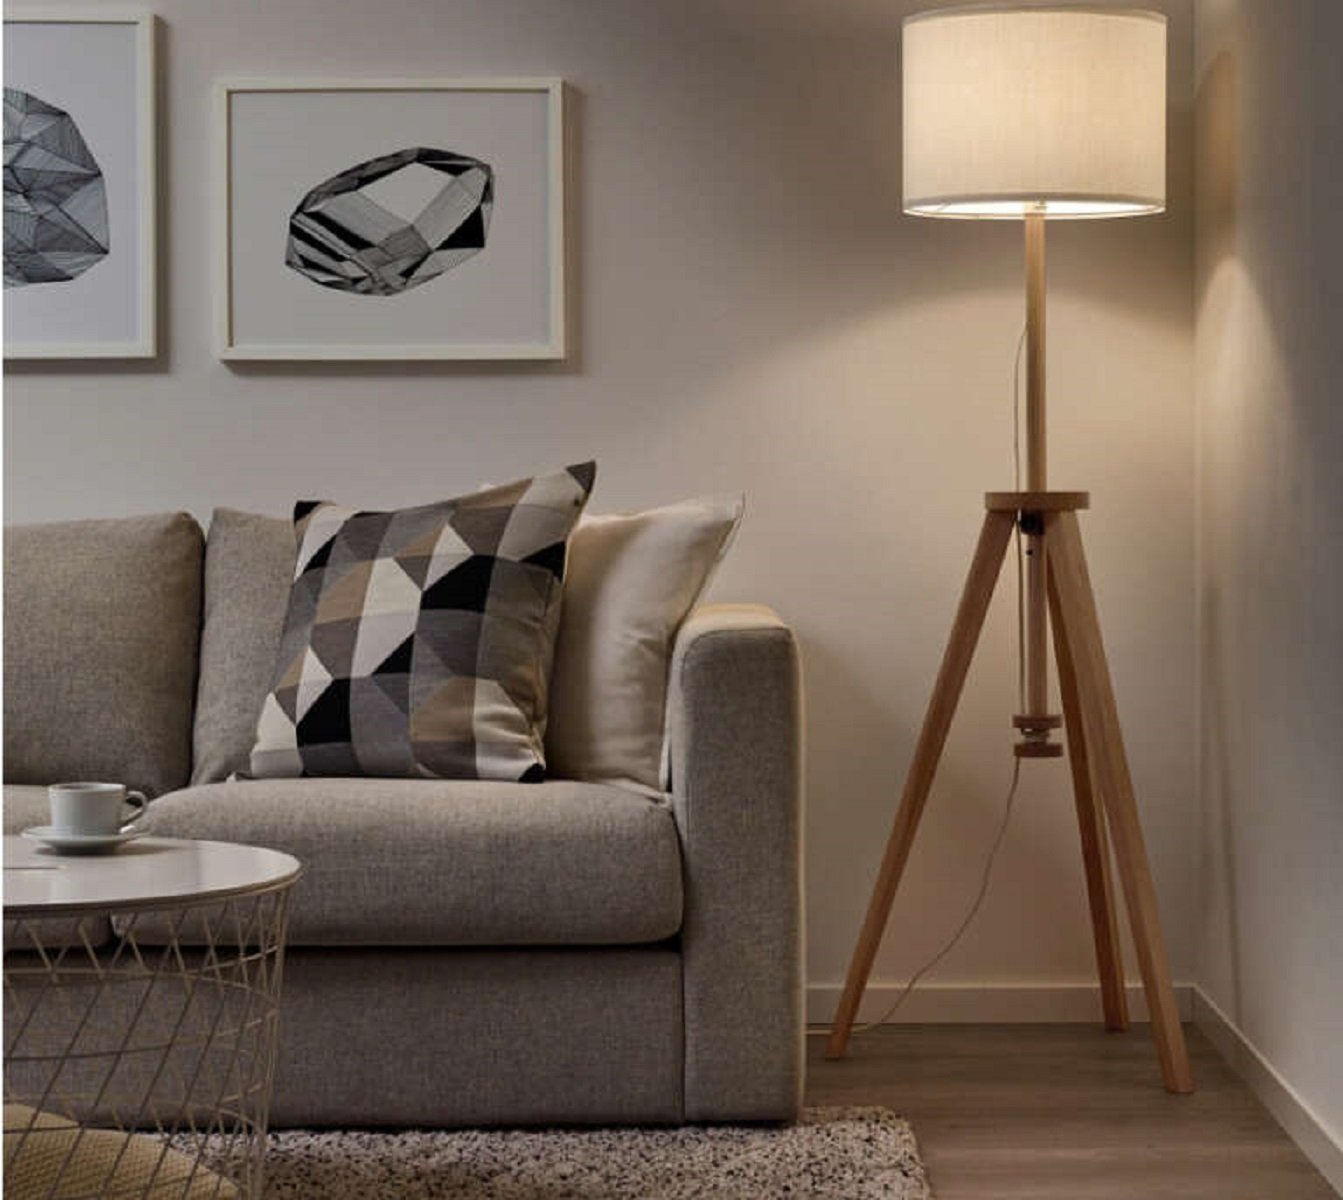 Ikea se pasa al diseño low cost con la lámpara tendencia